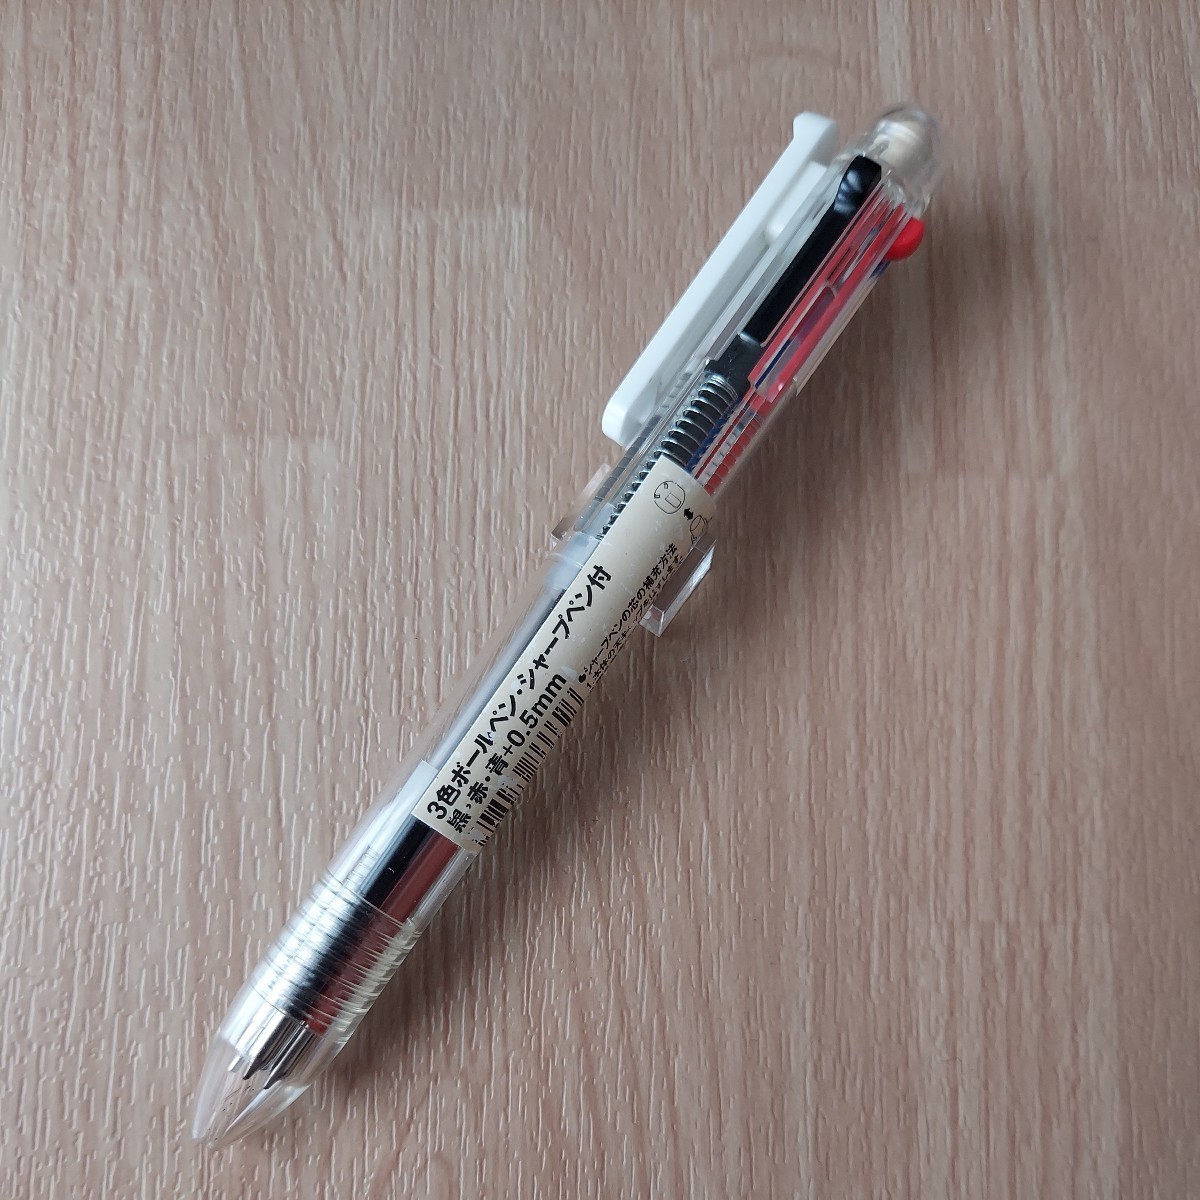 【1円】【希少レア】無印良品 3色ボールペン シャープペン付き 黒赤青+0.5mm 1円スタート 1スタ_画像2